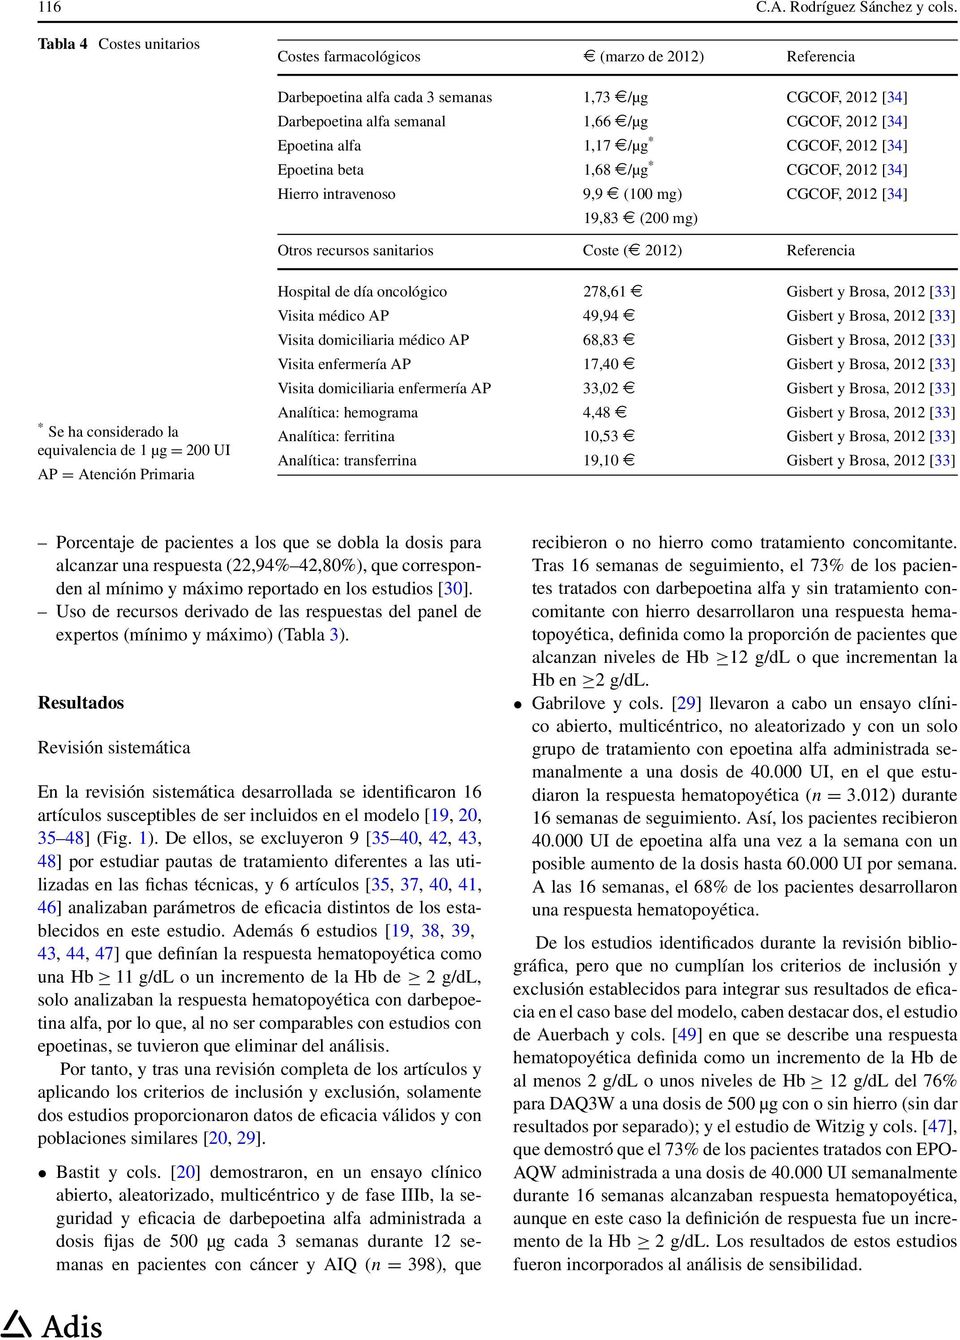 1,17 /µg * CGCOF, 2012 [34] Epoetina beta 1,68 /µg * CGCOF, 2012 [34] Hierro intravenoso 9,9 (100 mg) CGCOF, 2012 [34] 19,83 (200 mg) Otros recursos sanitarios Coste ( 2012) Referencia * Se ha